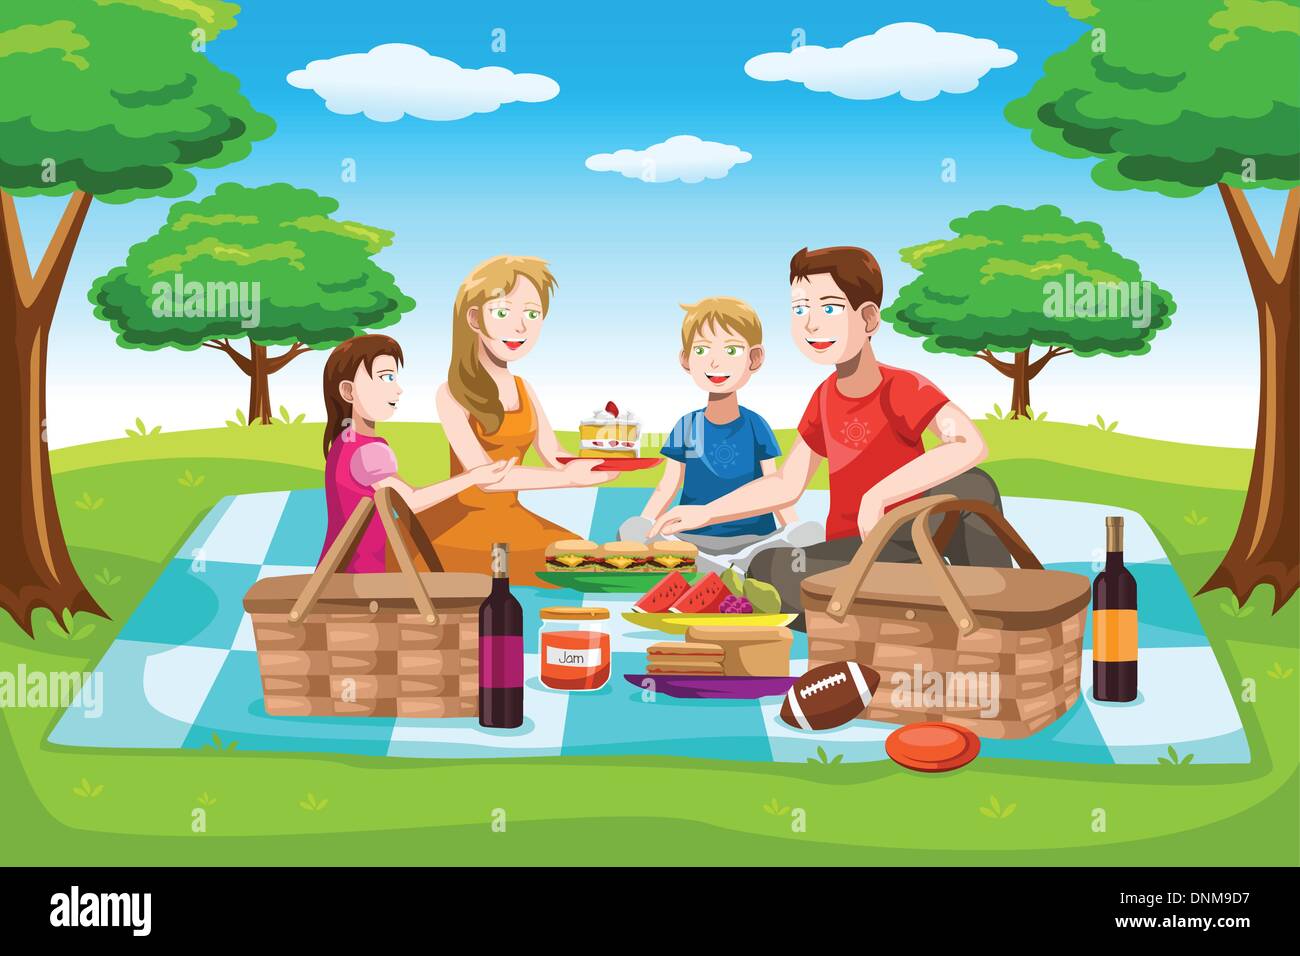 Una illustrazione vettoriale di una famiglia felice avente un picnic nel parco Illustrazione Vettoriale